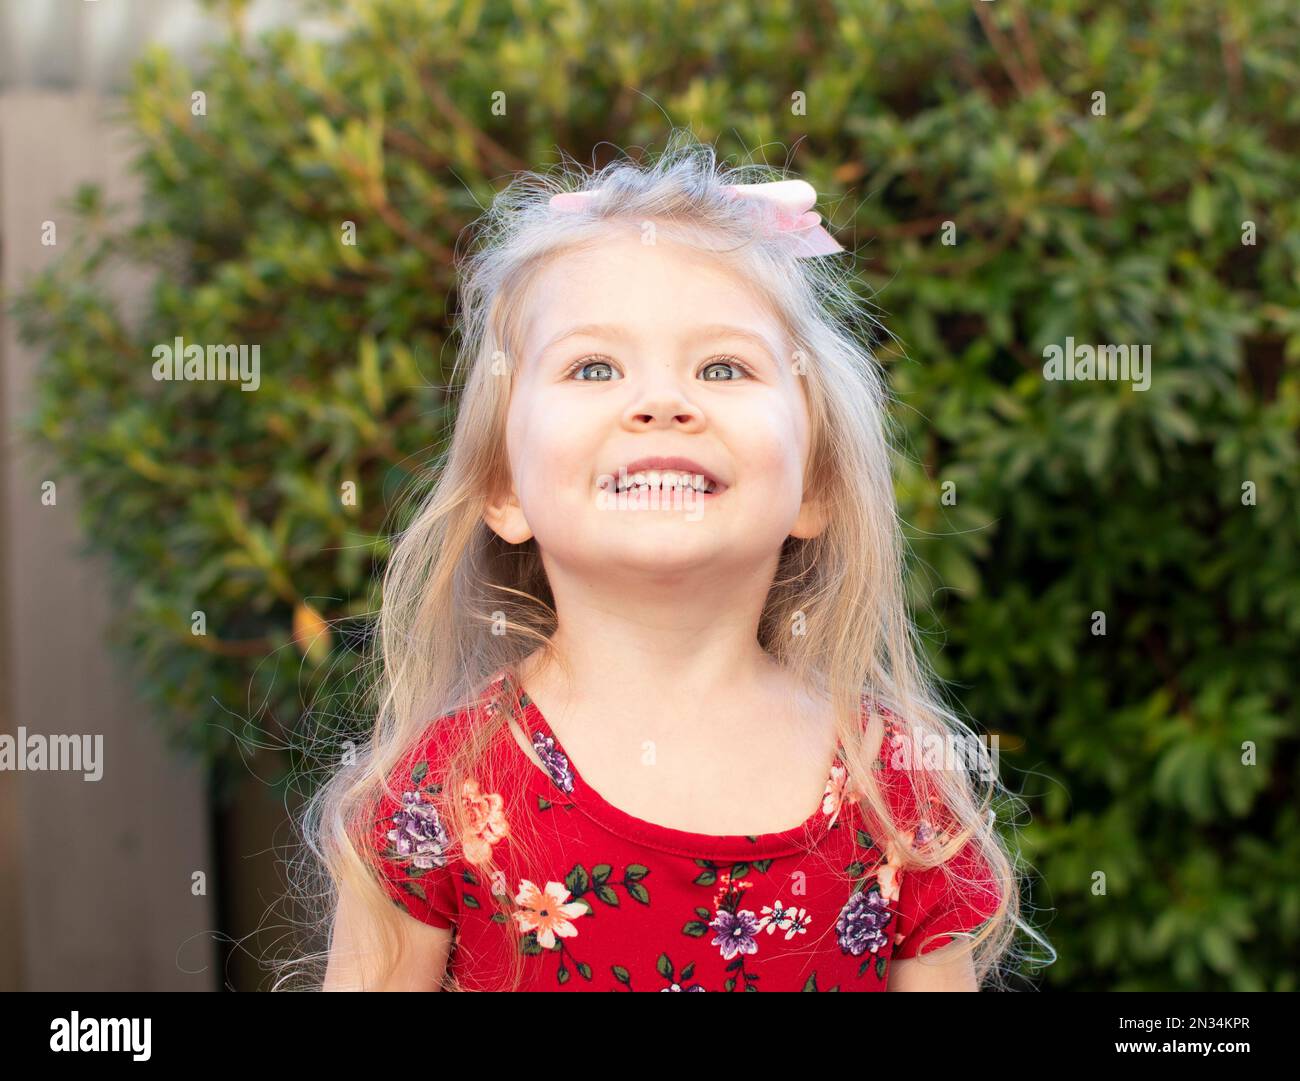 Ein hoffnungsvolles, lächelndes kleines Mädchen Stockfoto